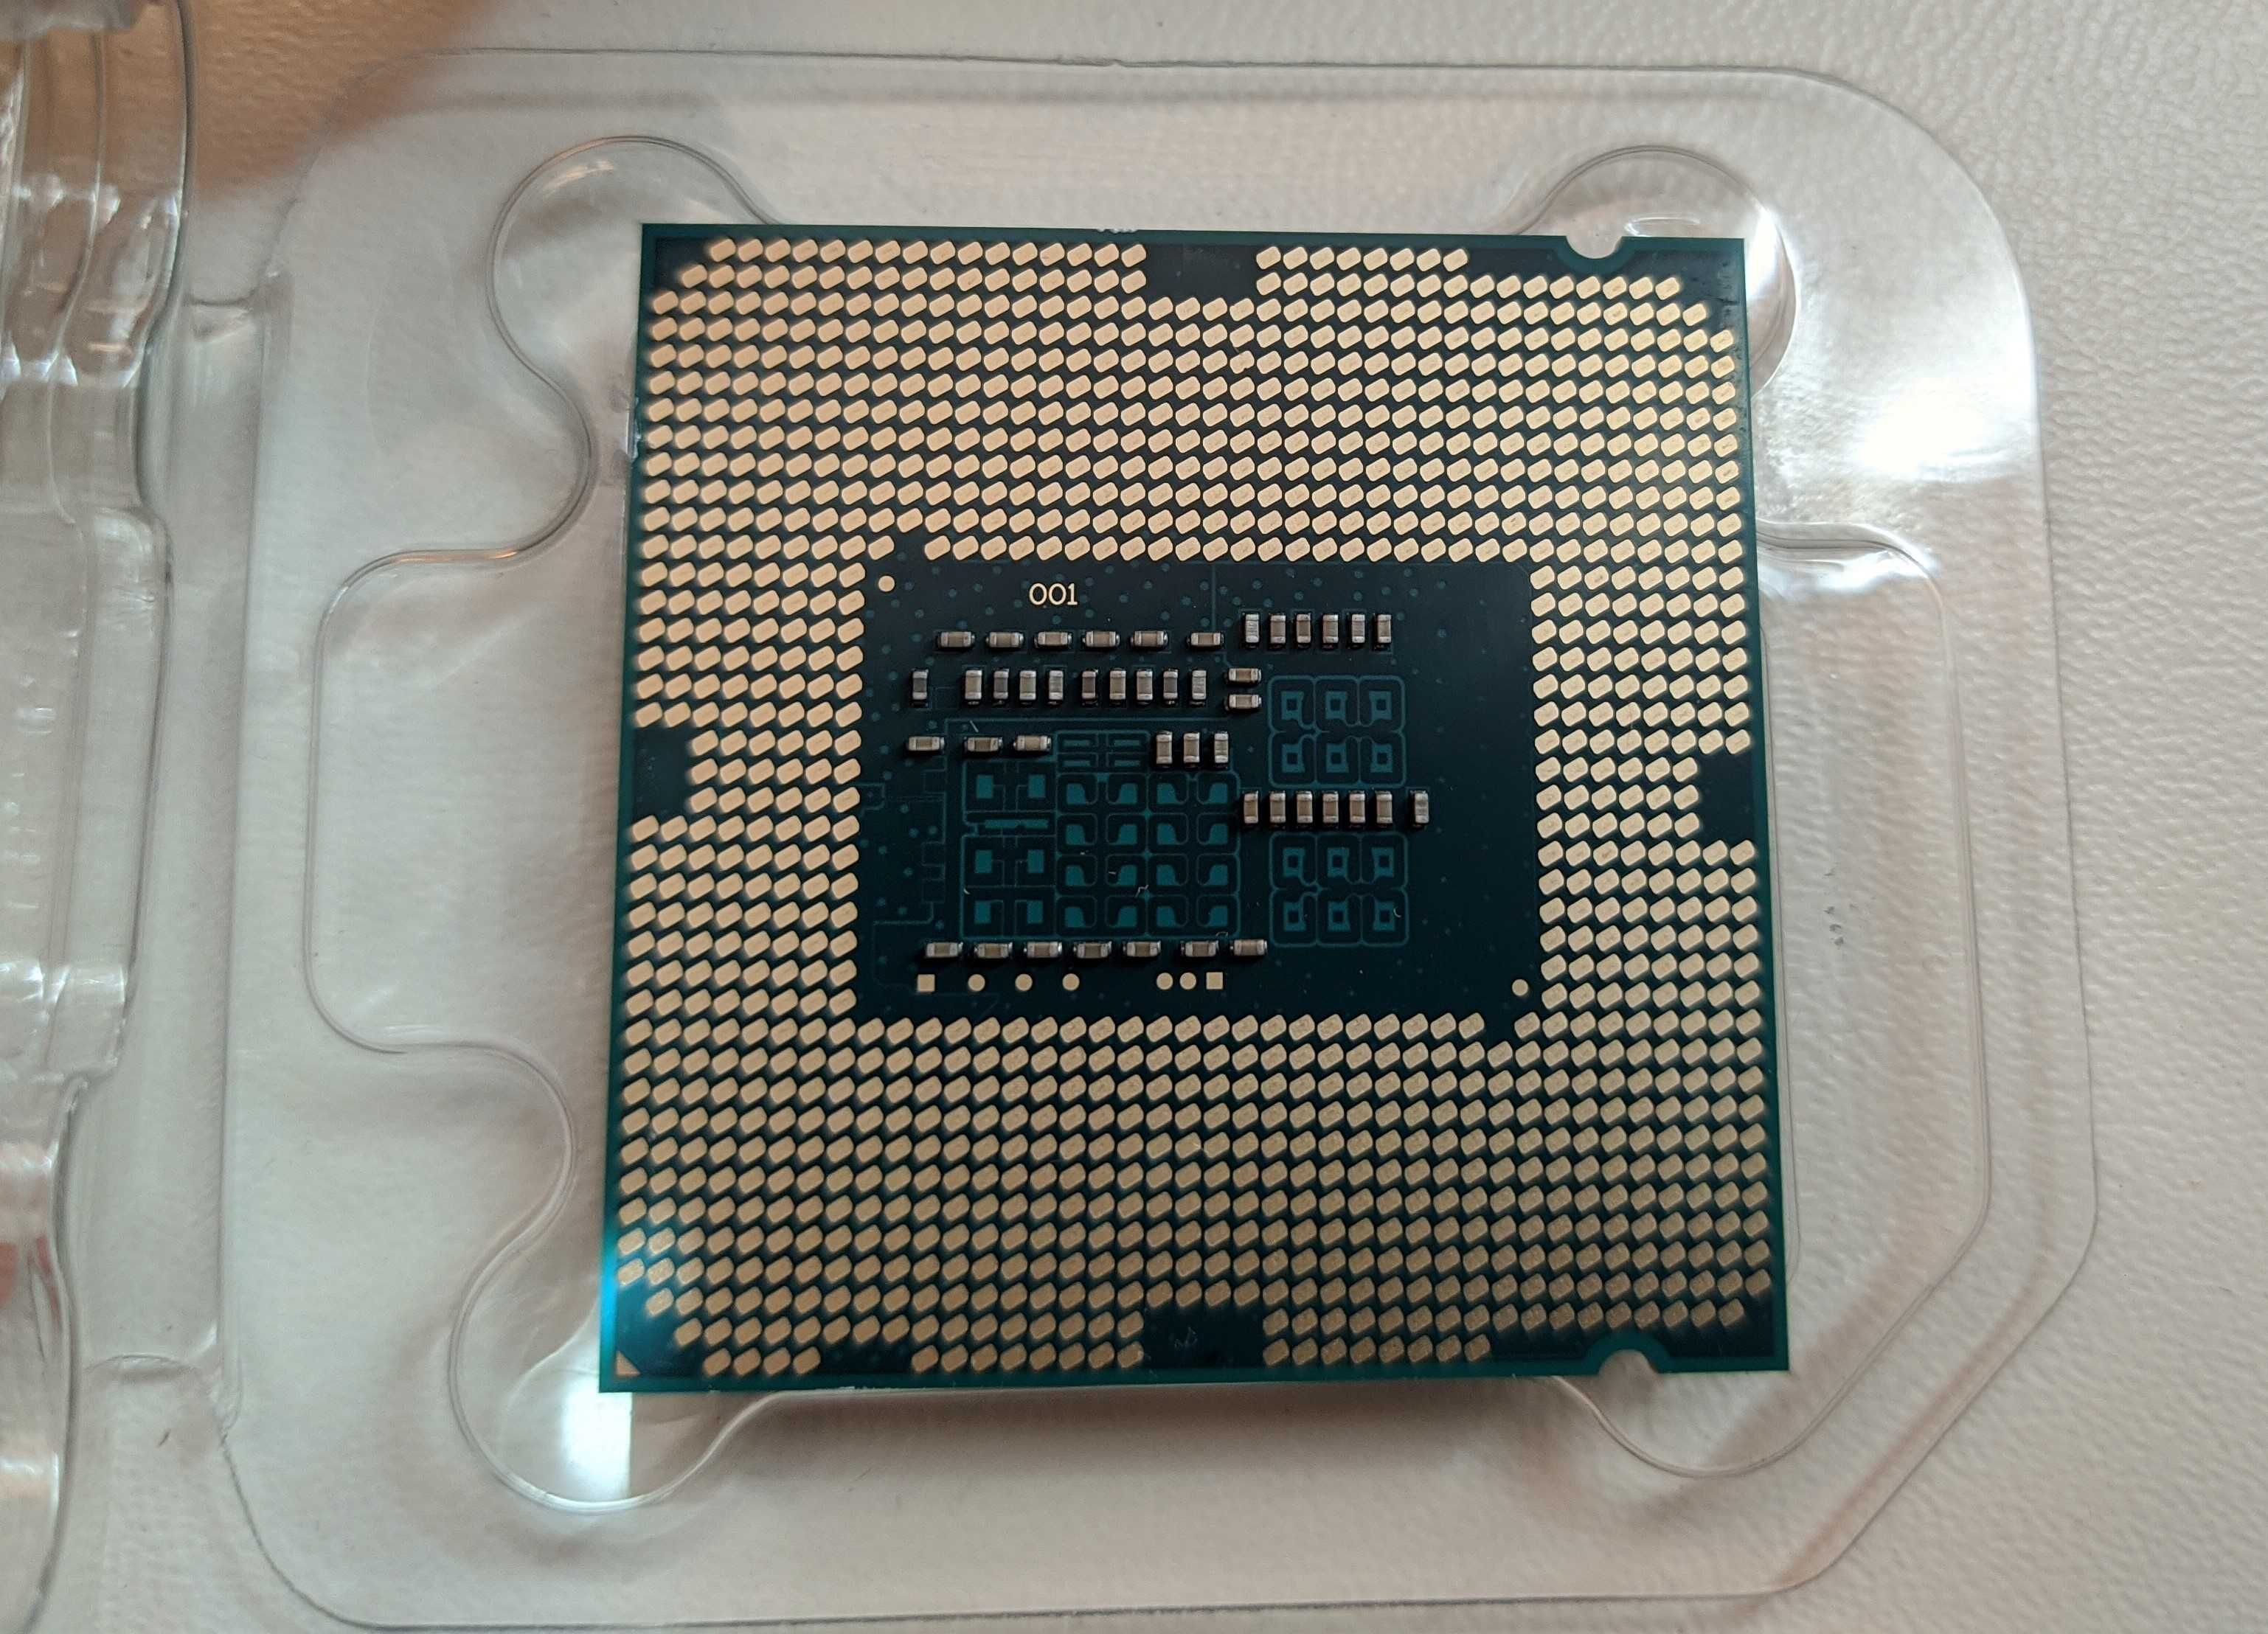 Процессор 1150 сокет Intel i3 4330 3.50GHz встроенная HD 4600